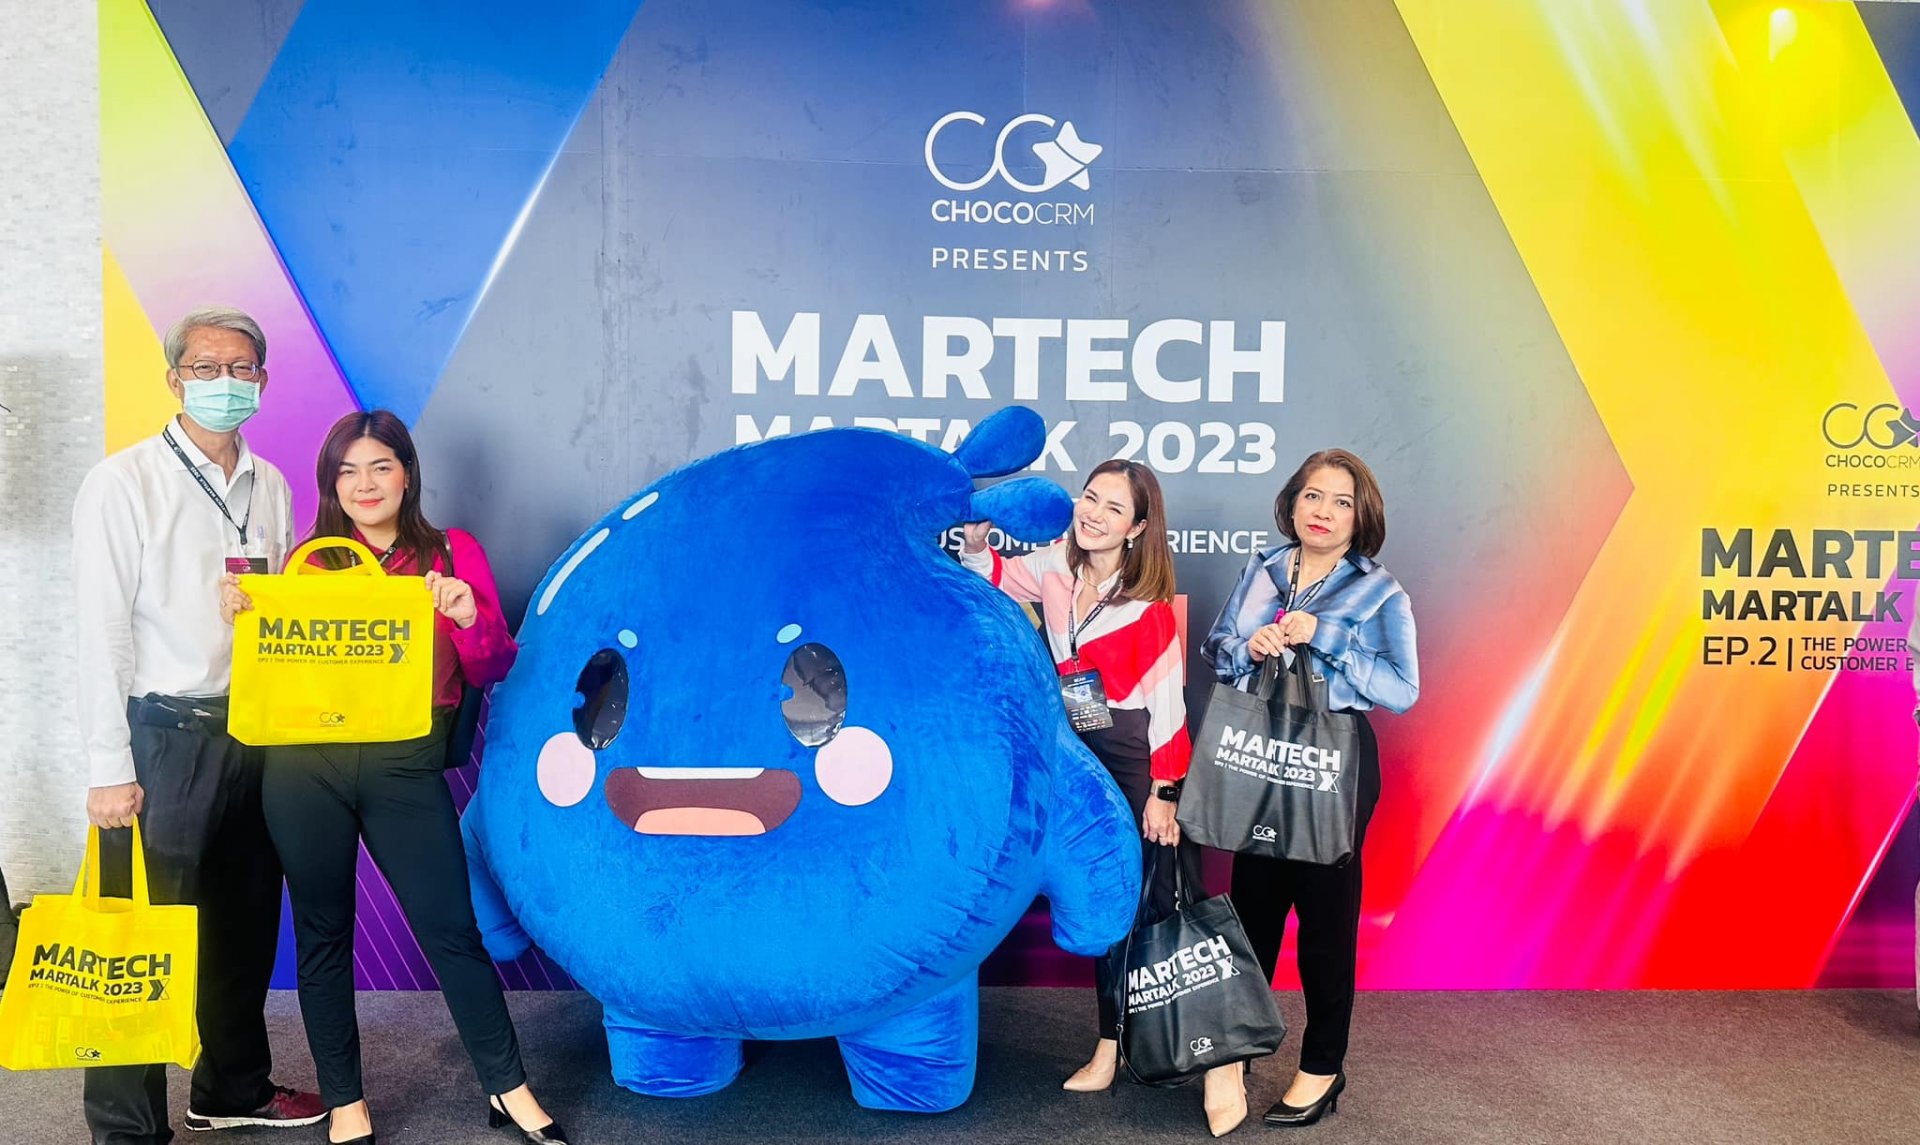 ร่วมงาน MarTech MarTalk 2023 EP.2 The Power of Customer Experience